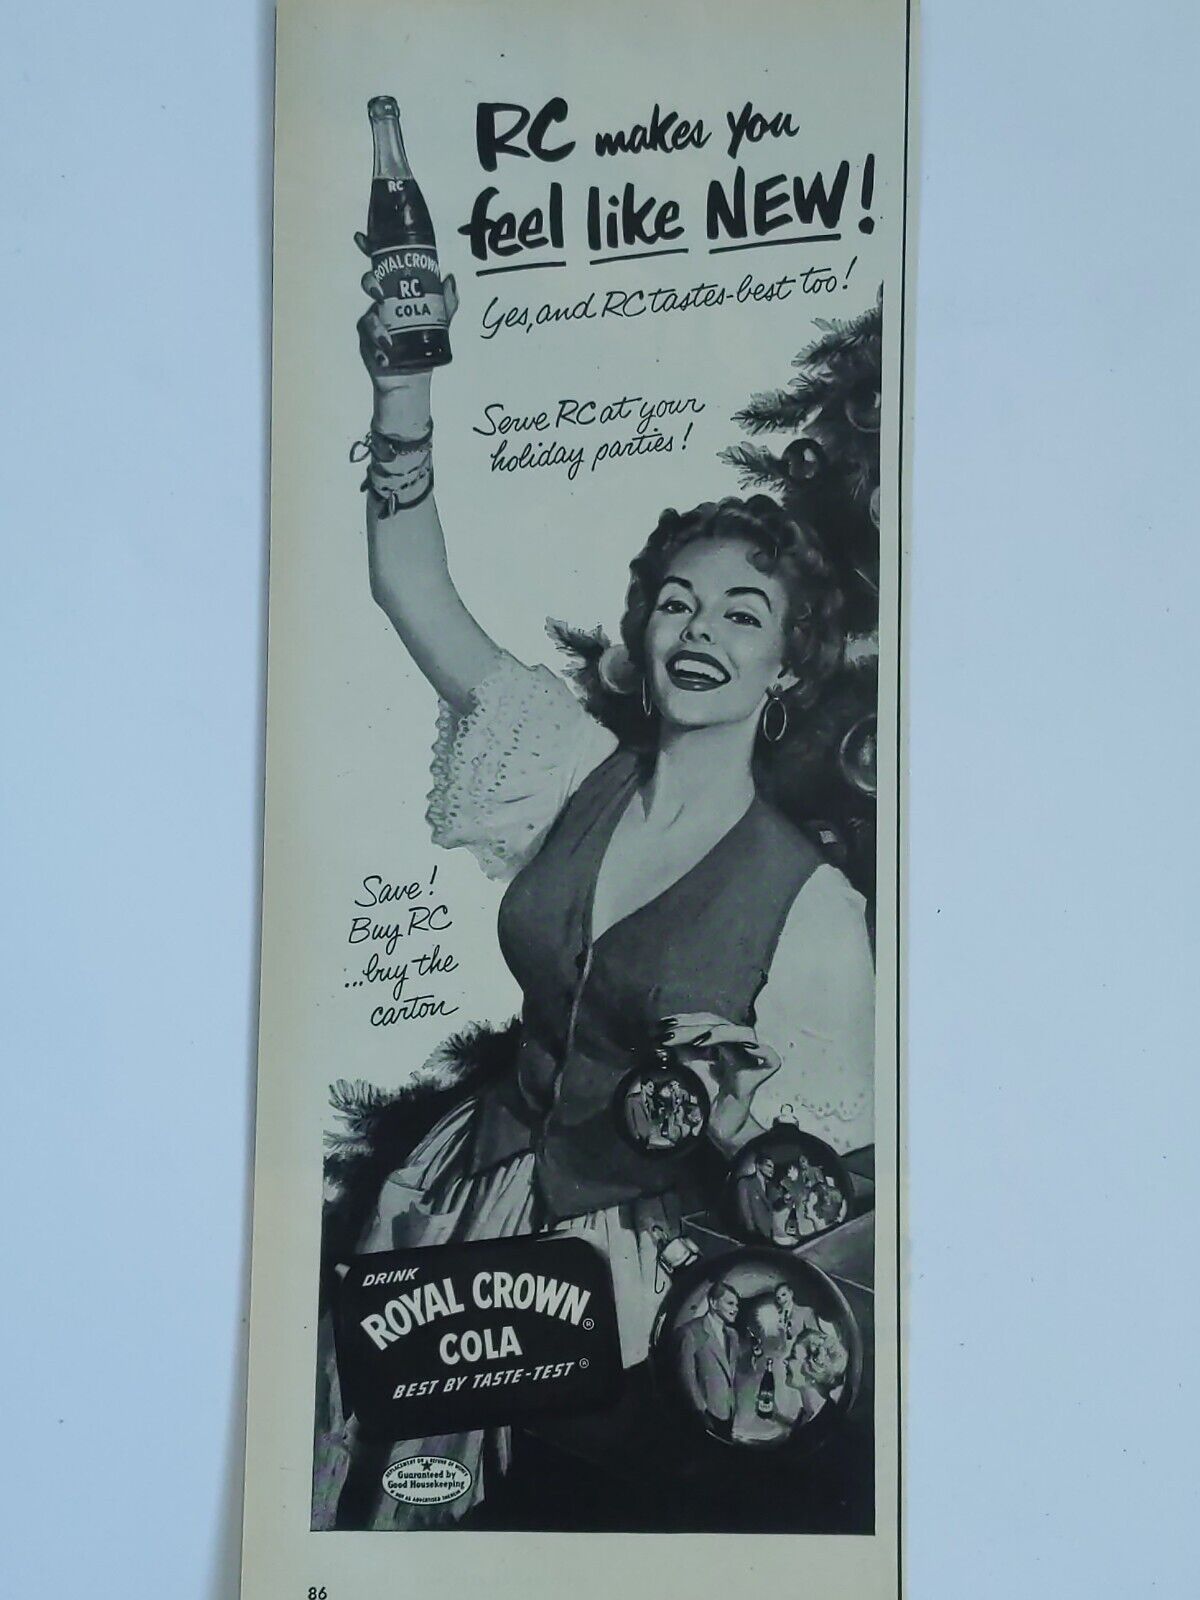 1953 vintage Royal crown cola print ad. Best by taste test